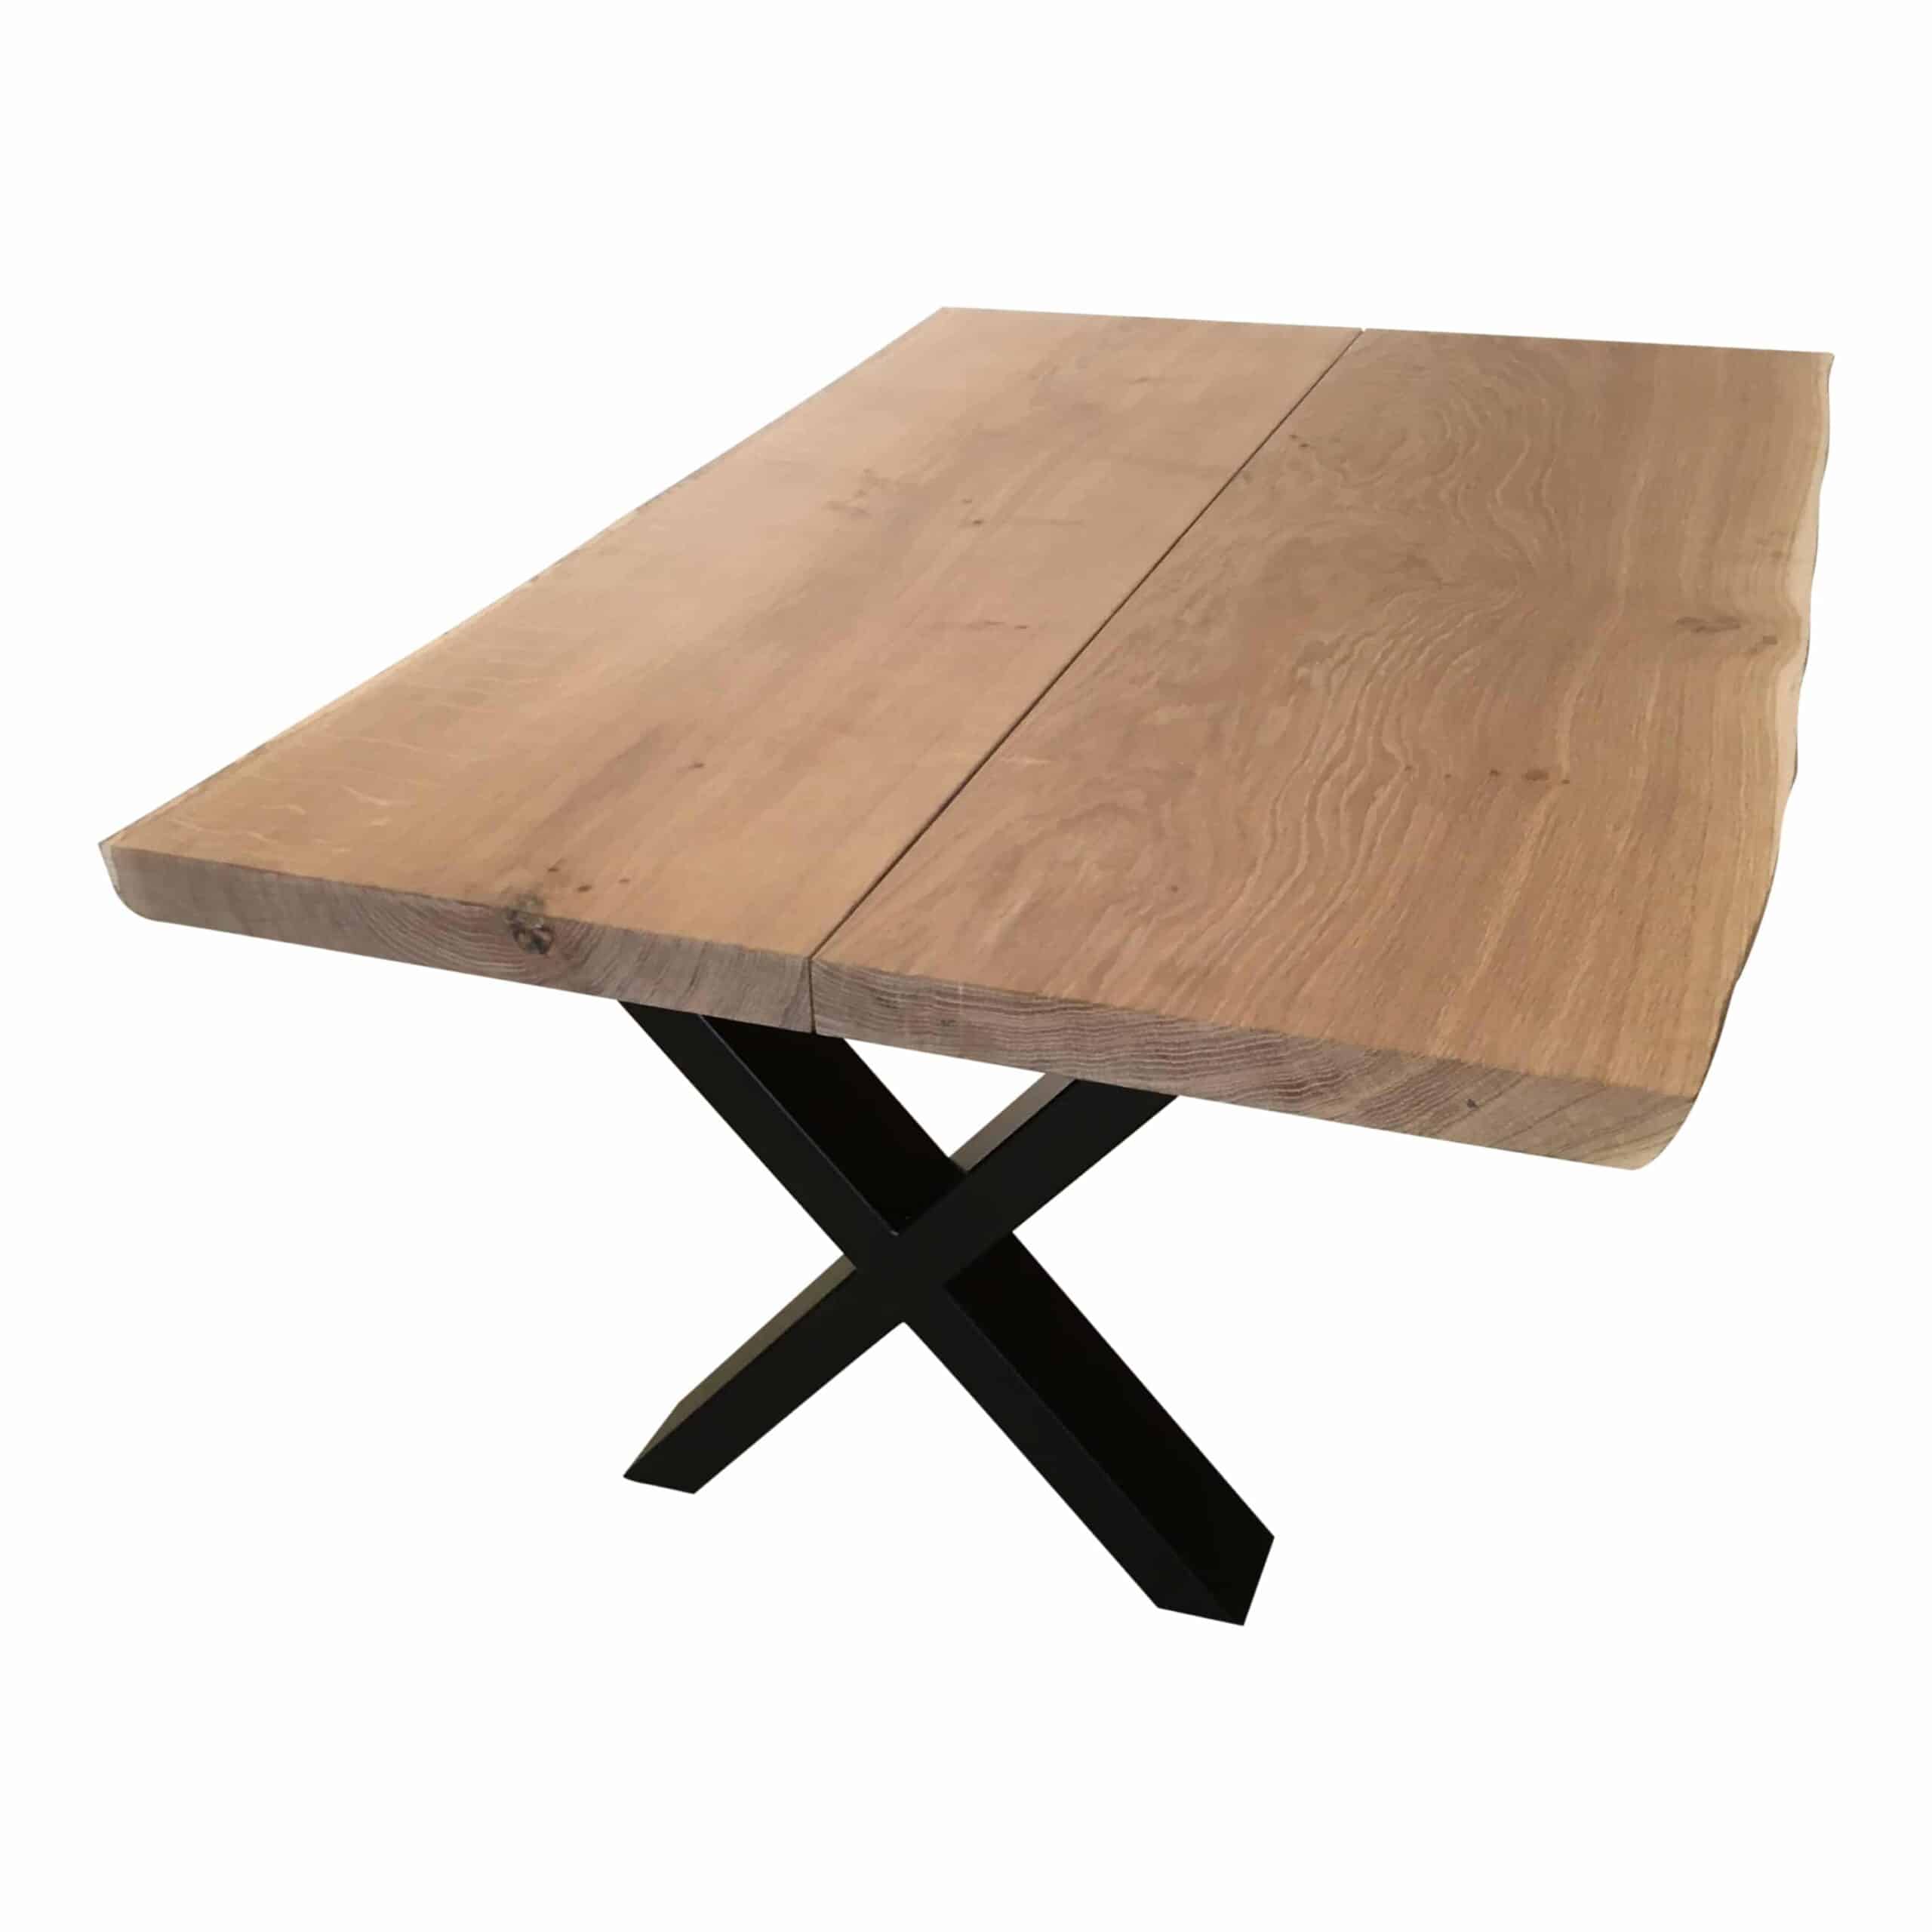 Sofabord - Eg 2 planker Hvid - Planke-bord.dk